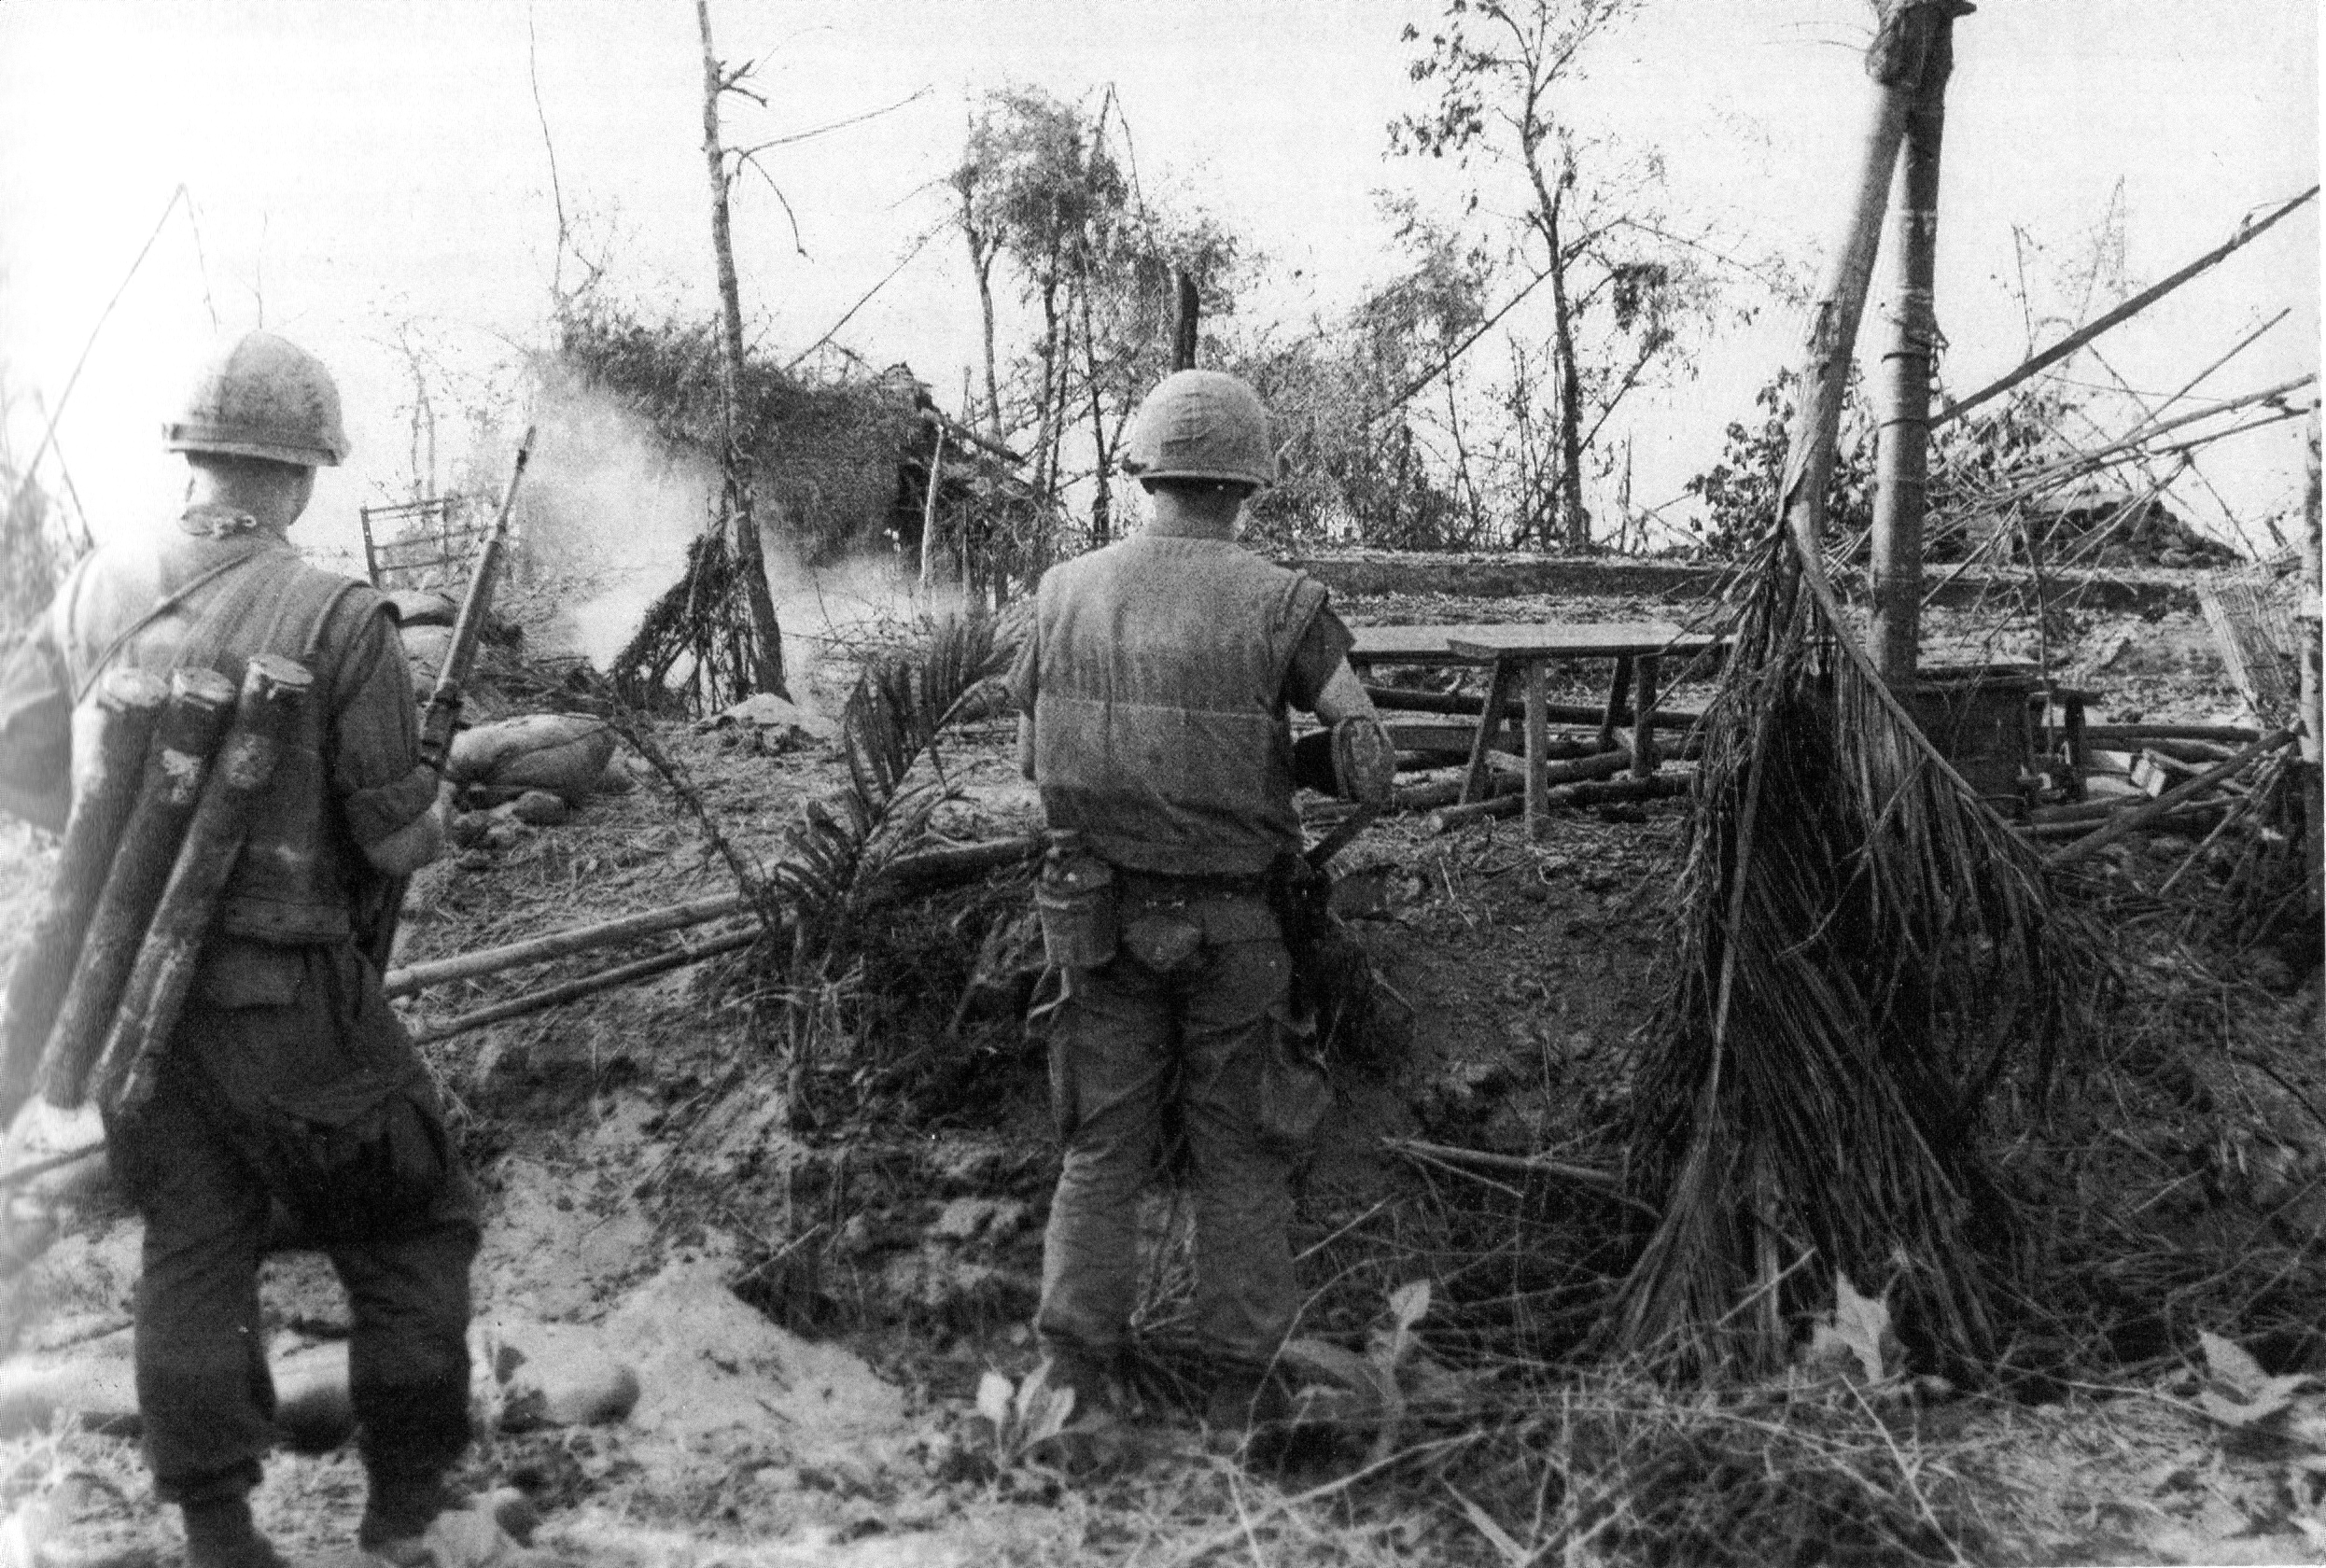 How was the Vietnam War a failure?